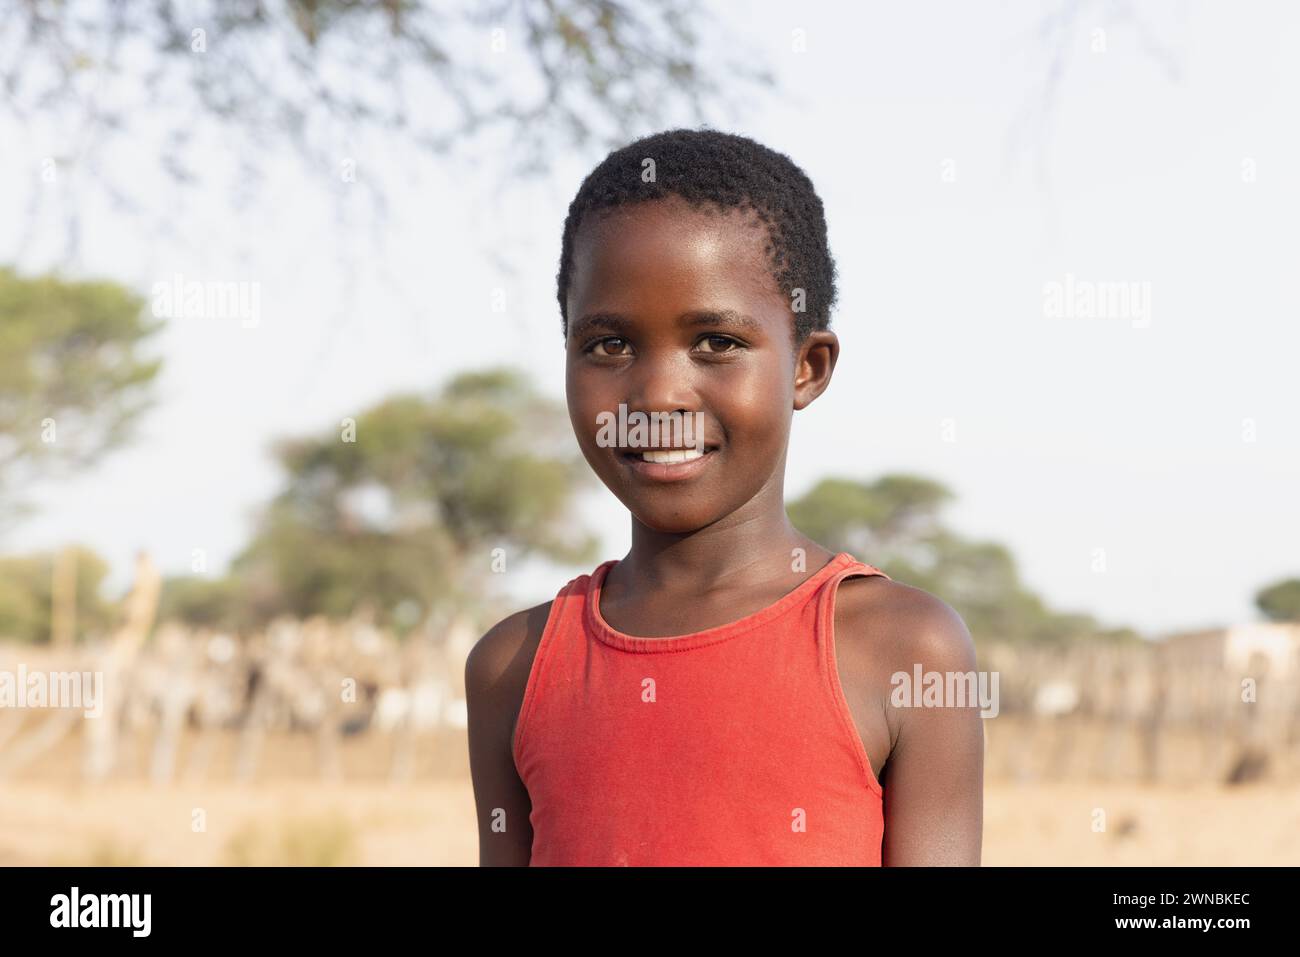 ragazza africana con un grande sorriso di toothy , nel villaggio, in piedi nel cortile accanto ad un albero Foto Stock